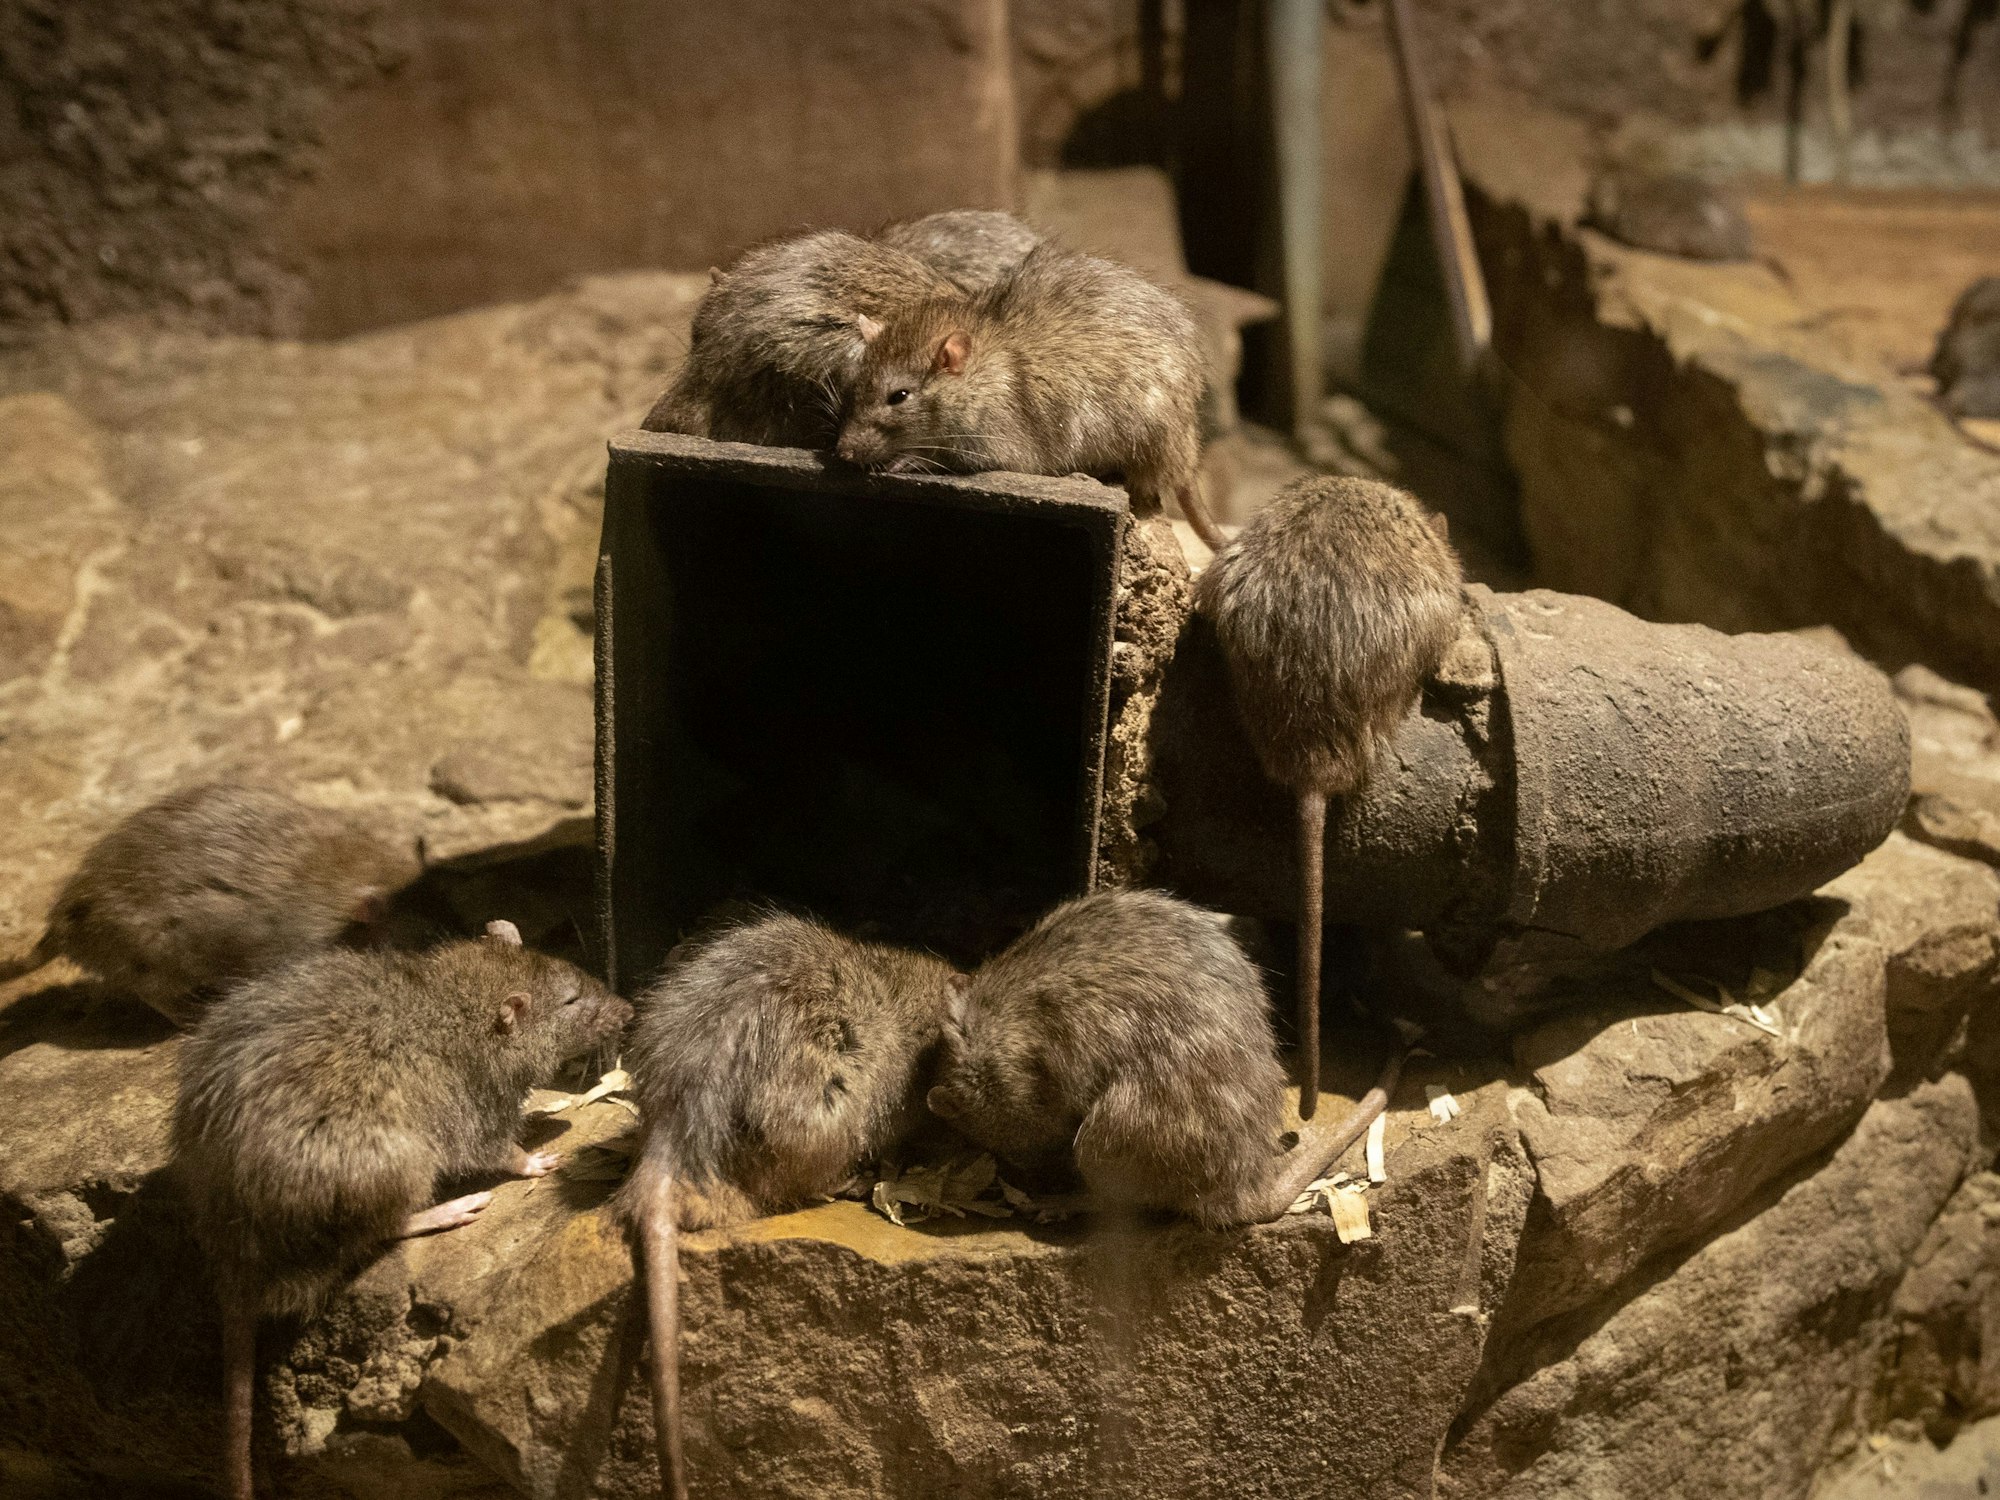 Eine Rattenplage und kein Ende in Sicht. Aus diesem Grund hat sich eine britische Mutter dafür entschieden, ihre Tochter über Weihnachten zu den Großeltern zu schicken. Unser Symbolfoto vom 26. März 2019 zeigt Ratten im Osnabrücker Zoo.